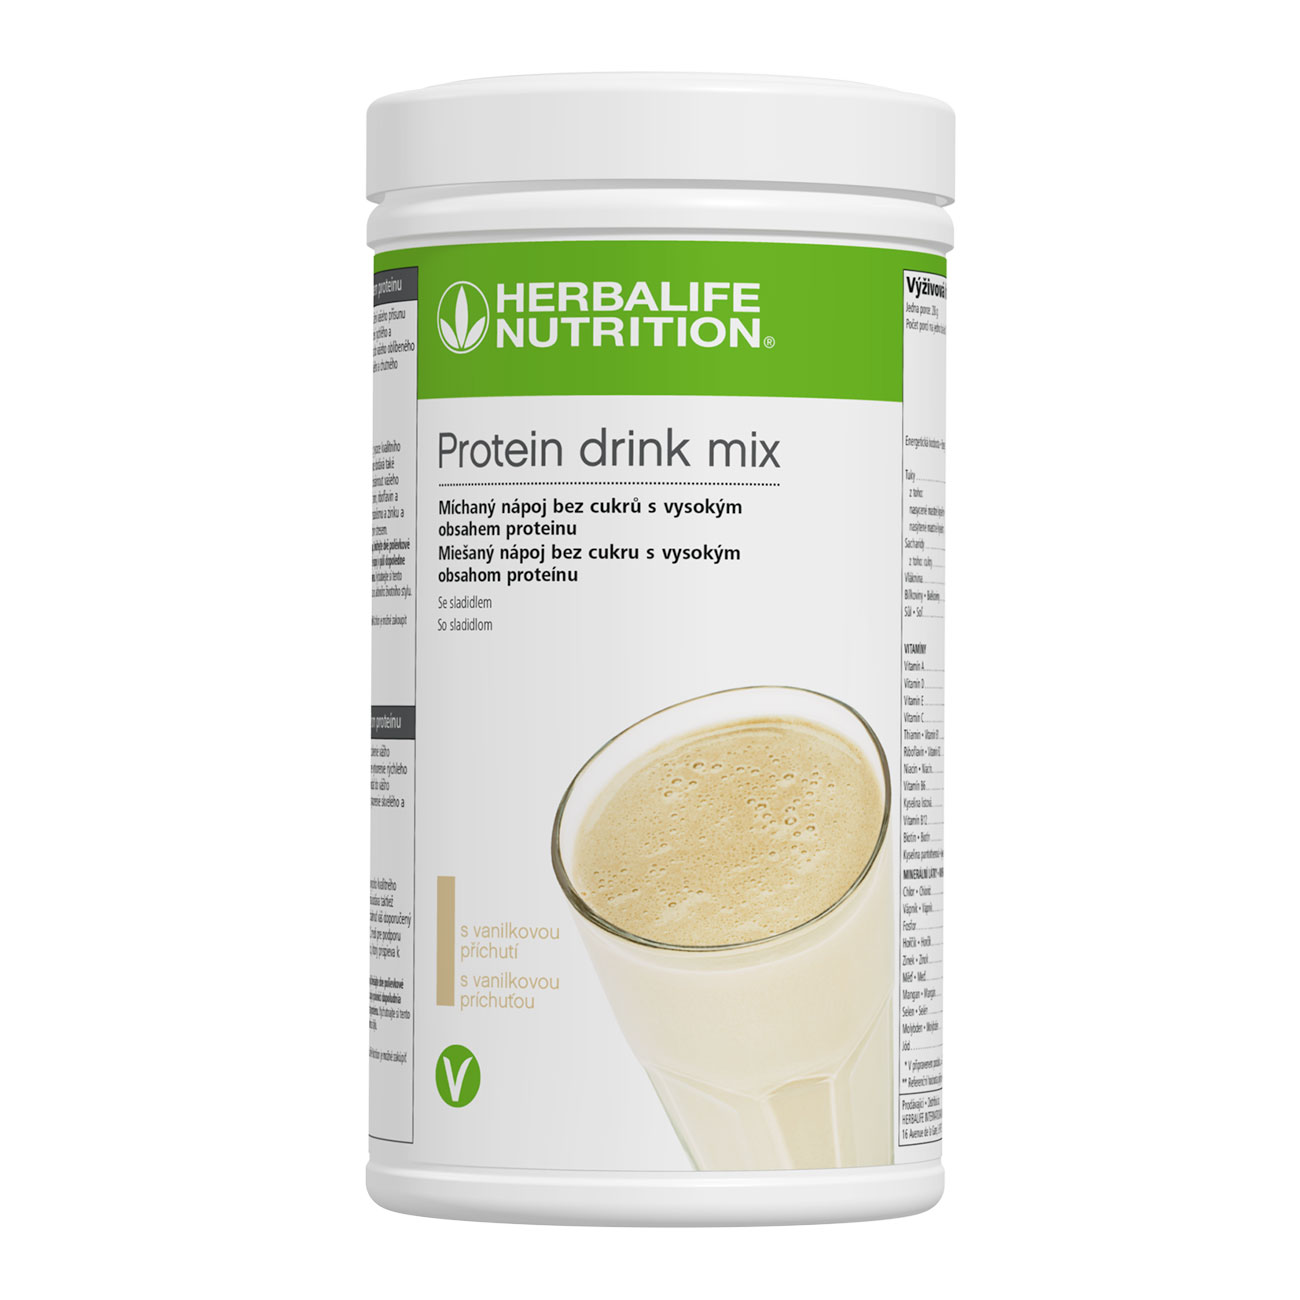 Protein Drink Mix Proteínový koktail s vanilkovou príchuťou.